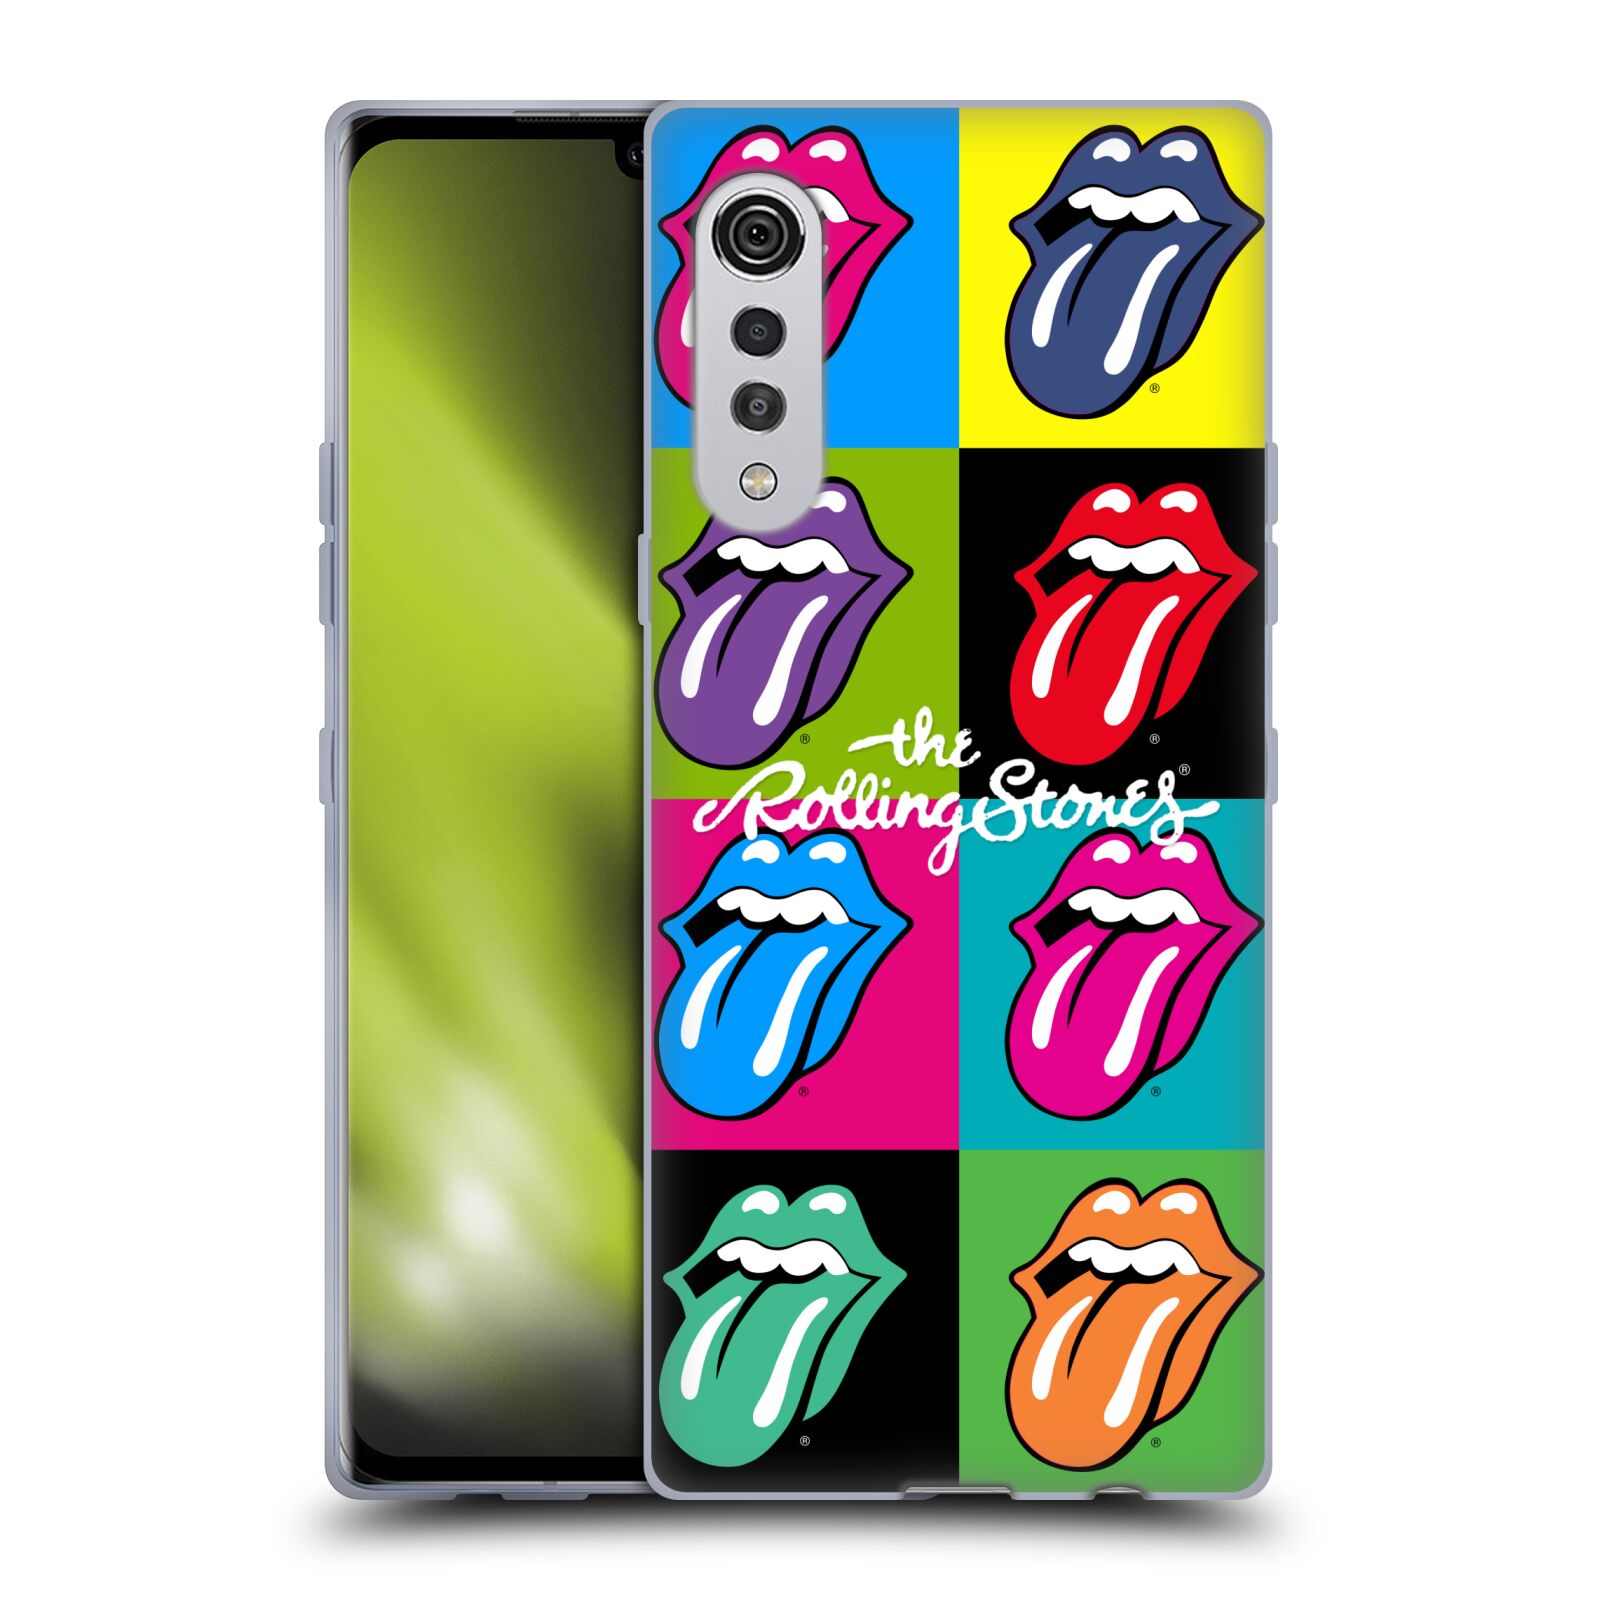 Silikonové pouzdro na mobil LG Velvet - Head Case - The Rolling Stones - Pop Art Vyplazené Jazyky